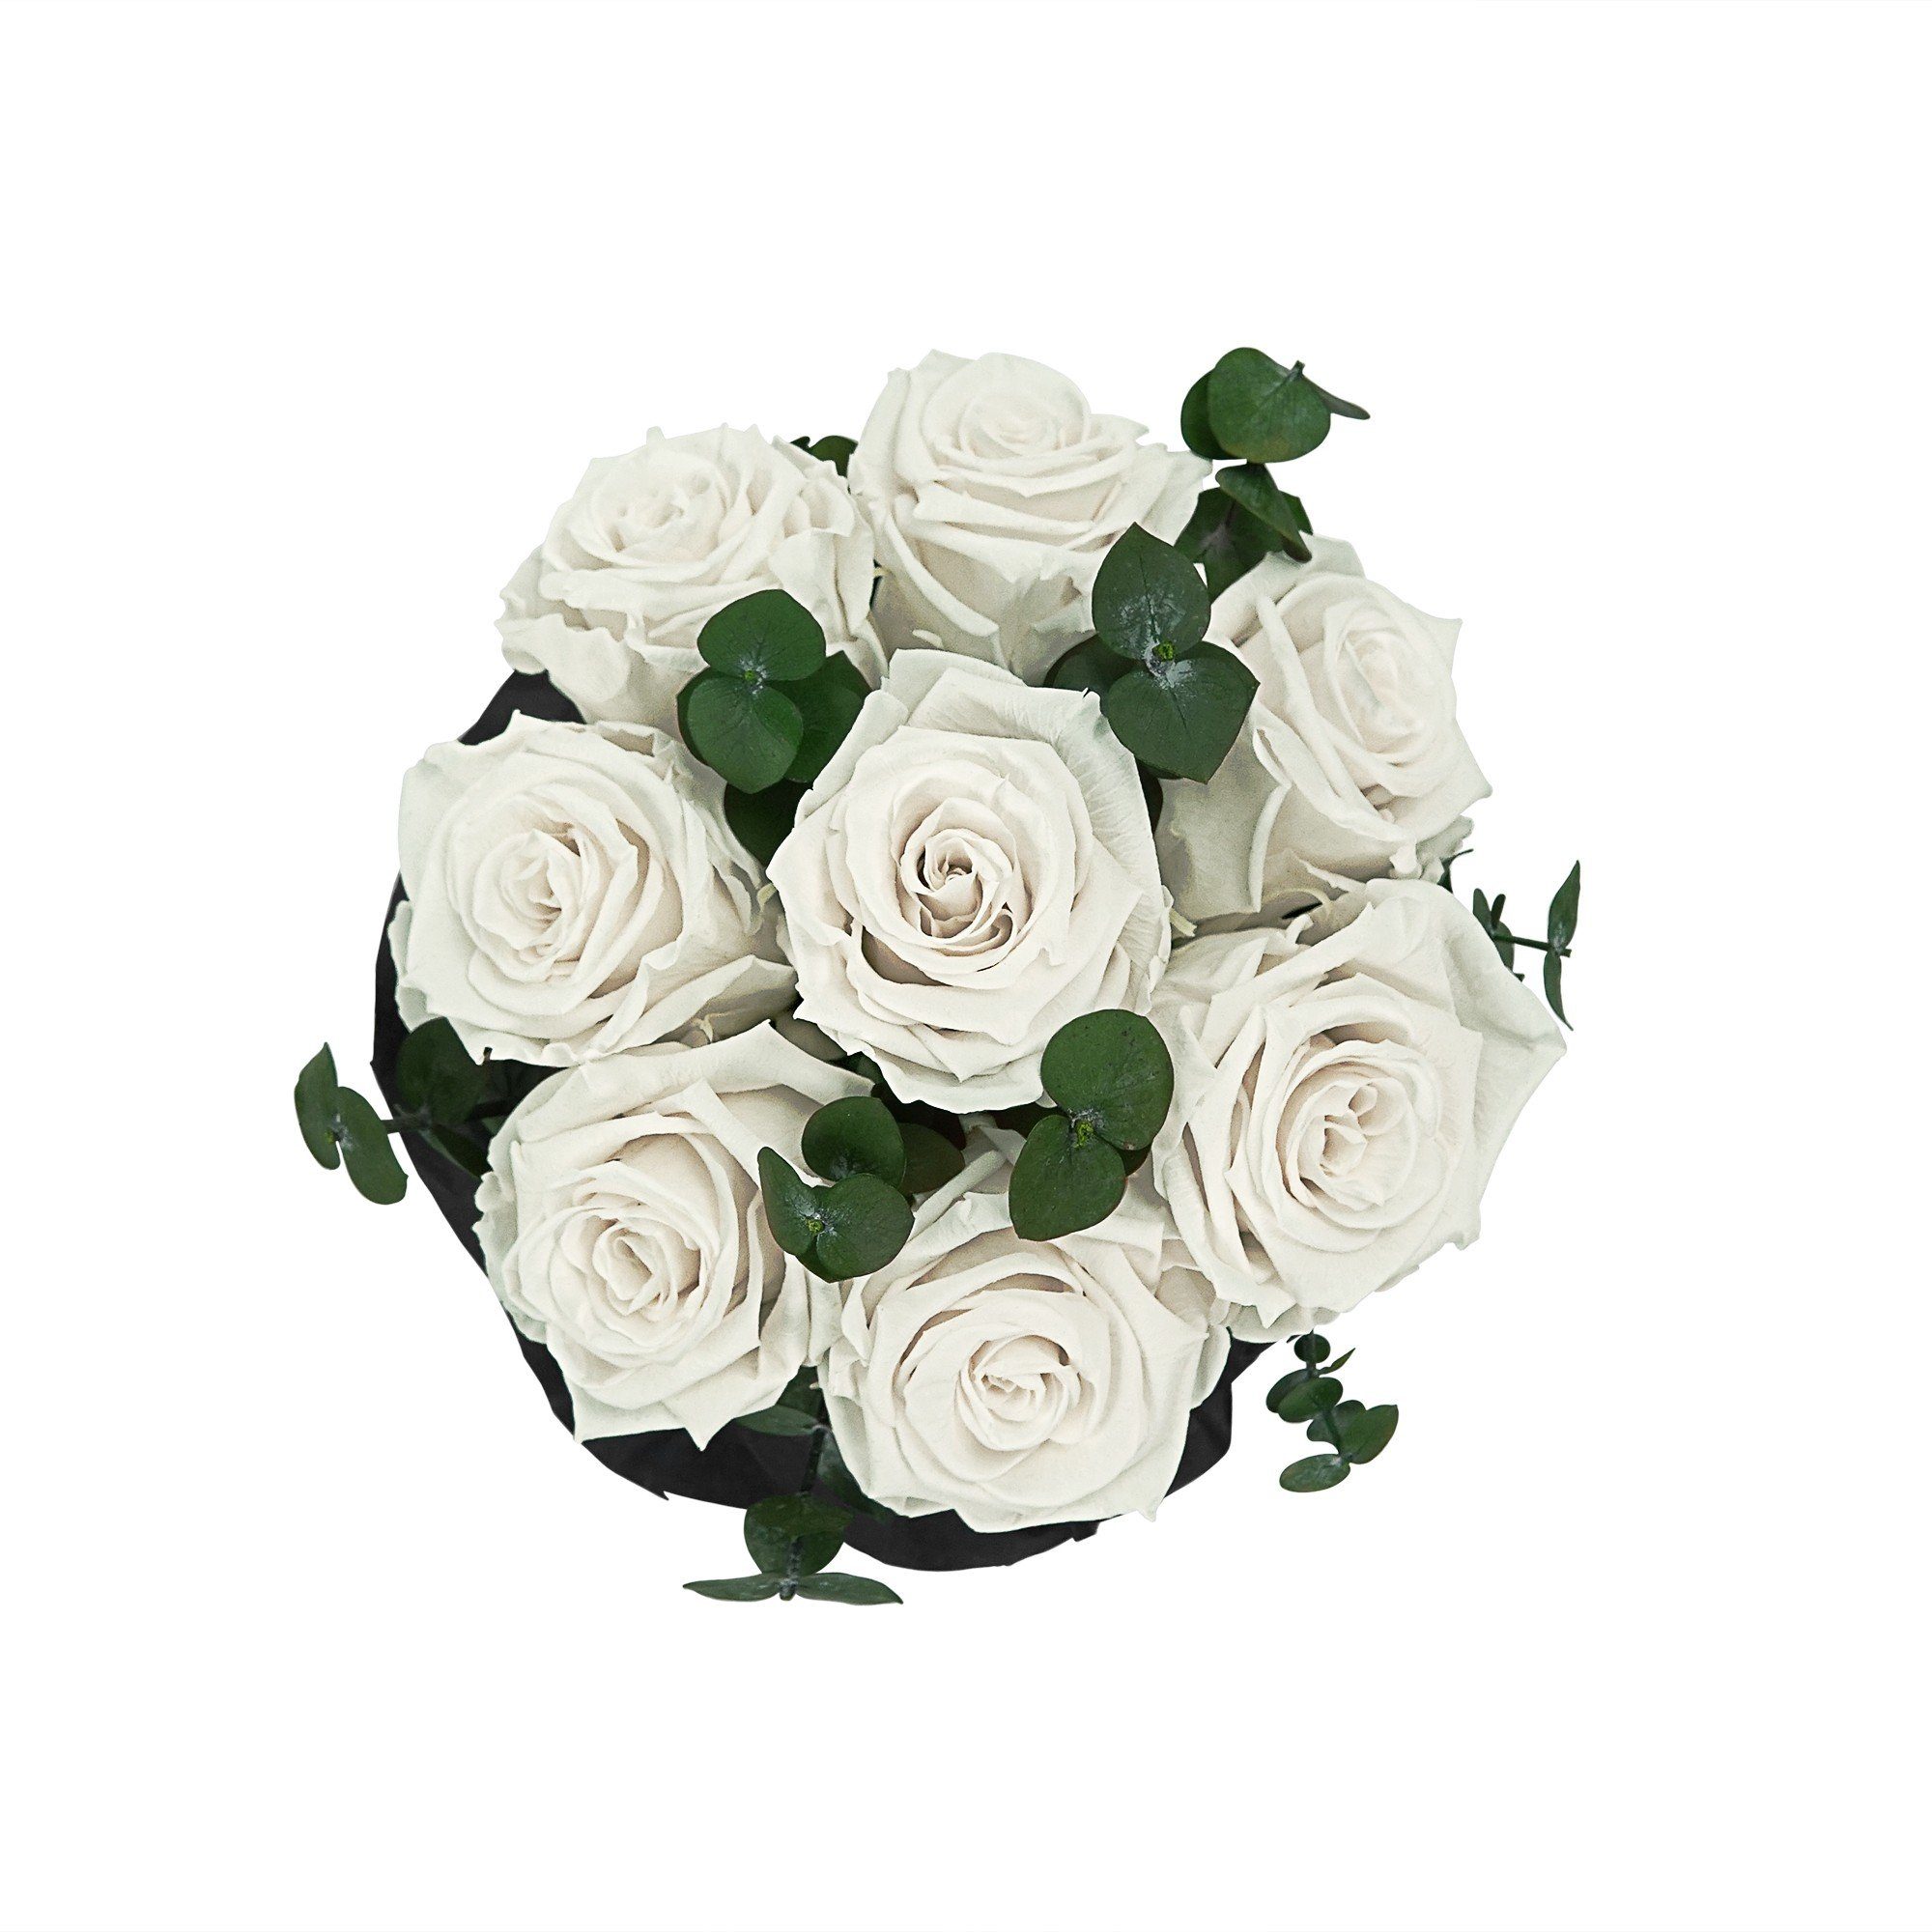 Kunstblume Rosenbox 3 Blumen Weiß 7-9 Bouquet Holy I Jahre by Flowers Raul duftende Infinity Rose, I mit Echte, Richter konservierte haltbar I Rosen